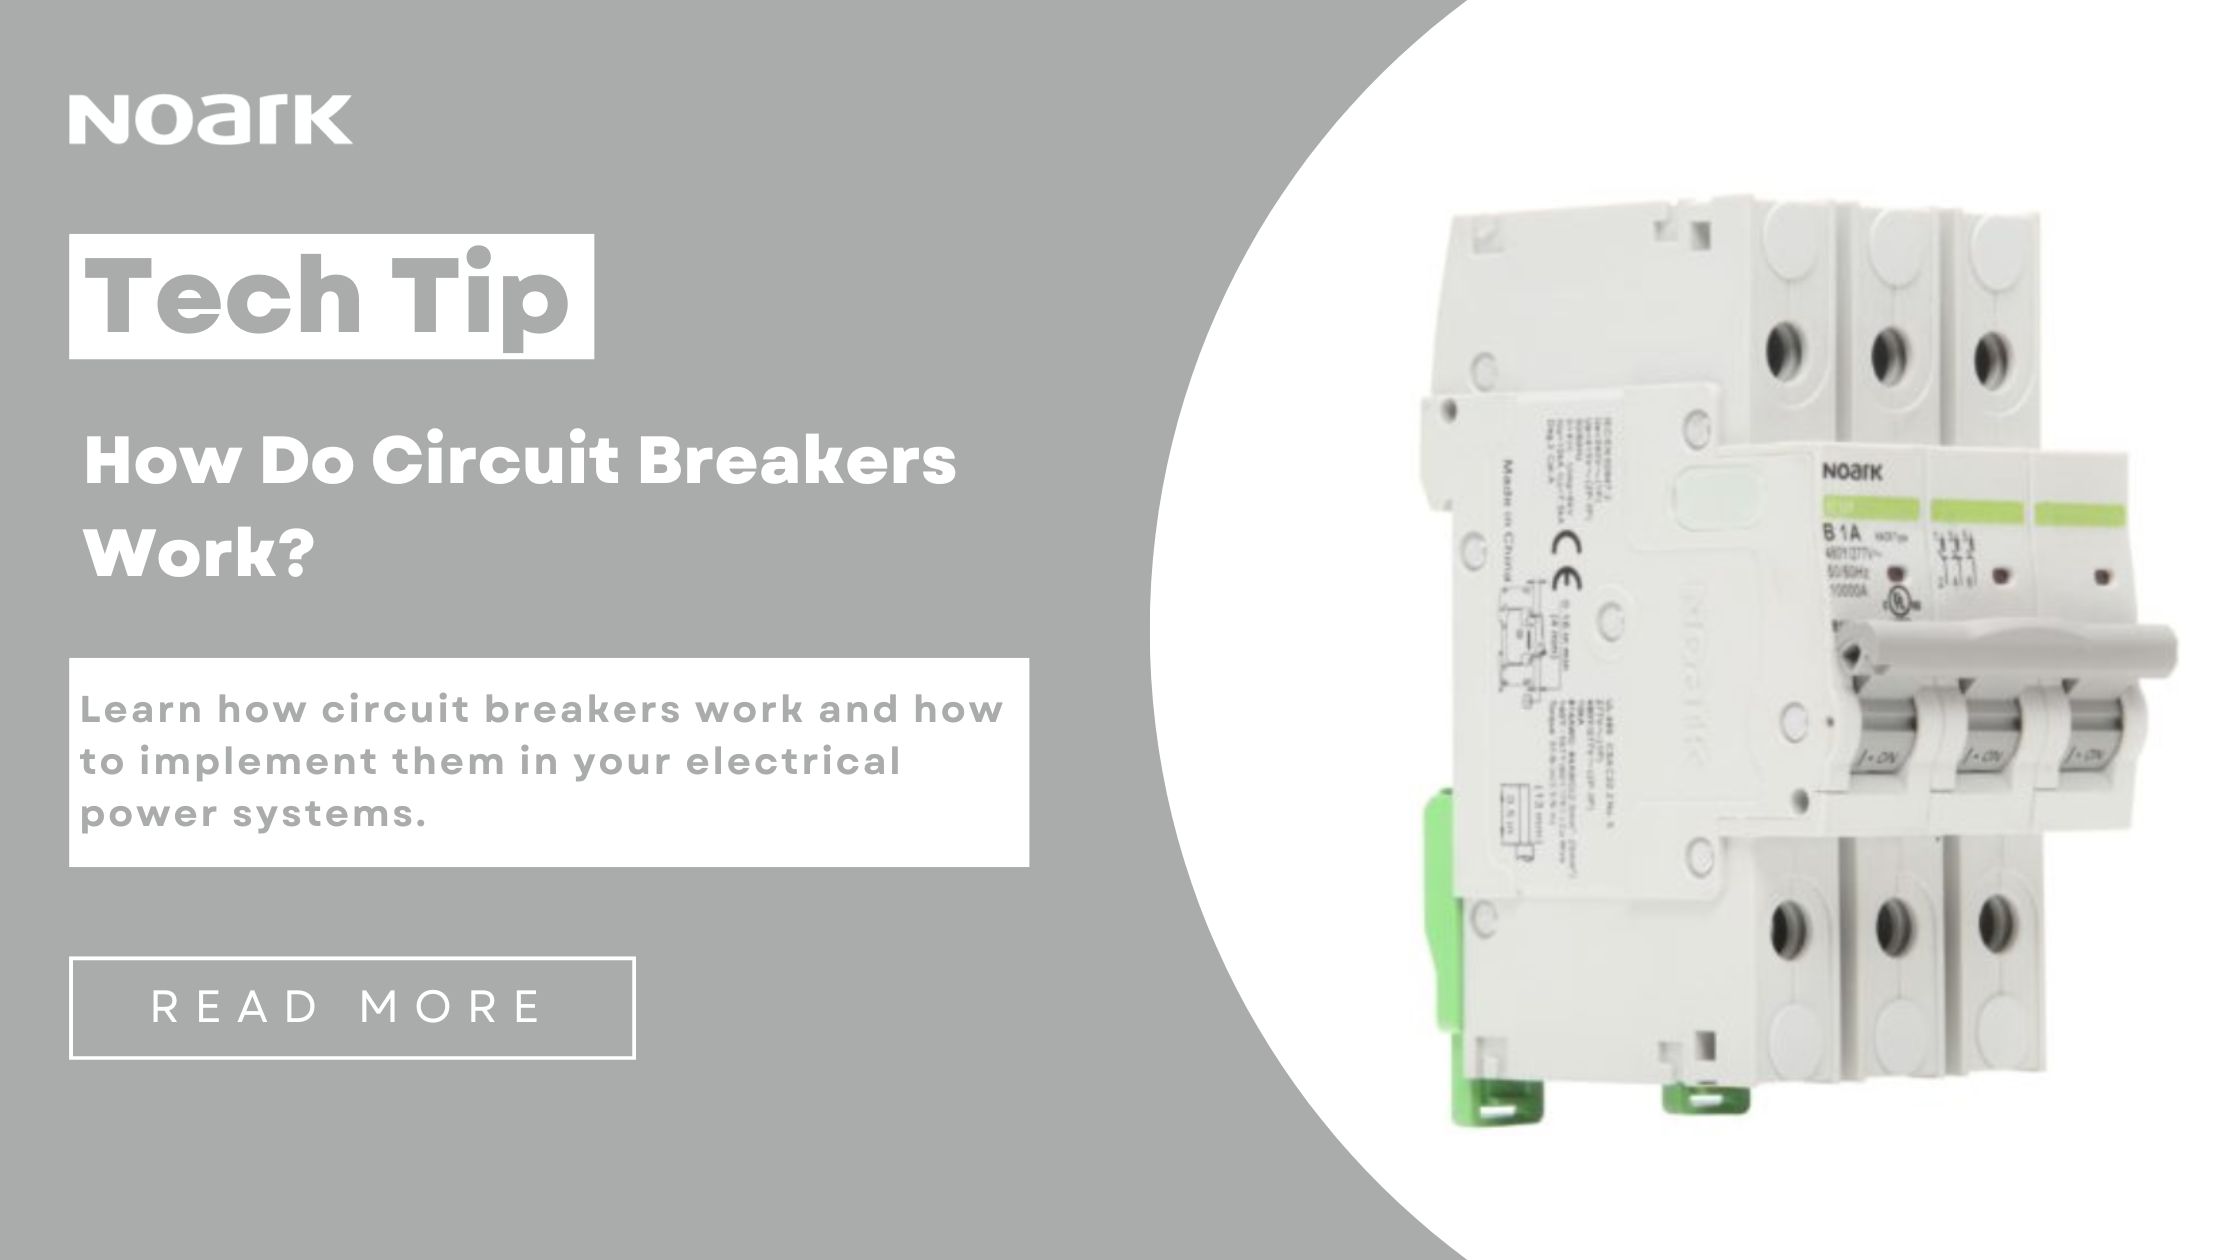 How Do Circuit Breakers Work?